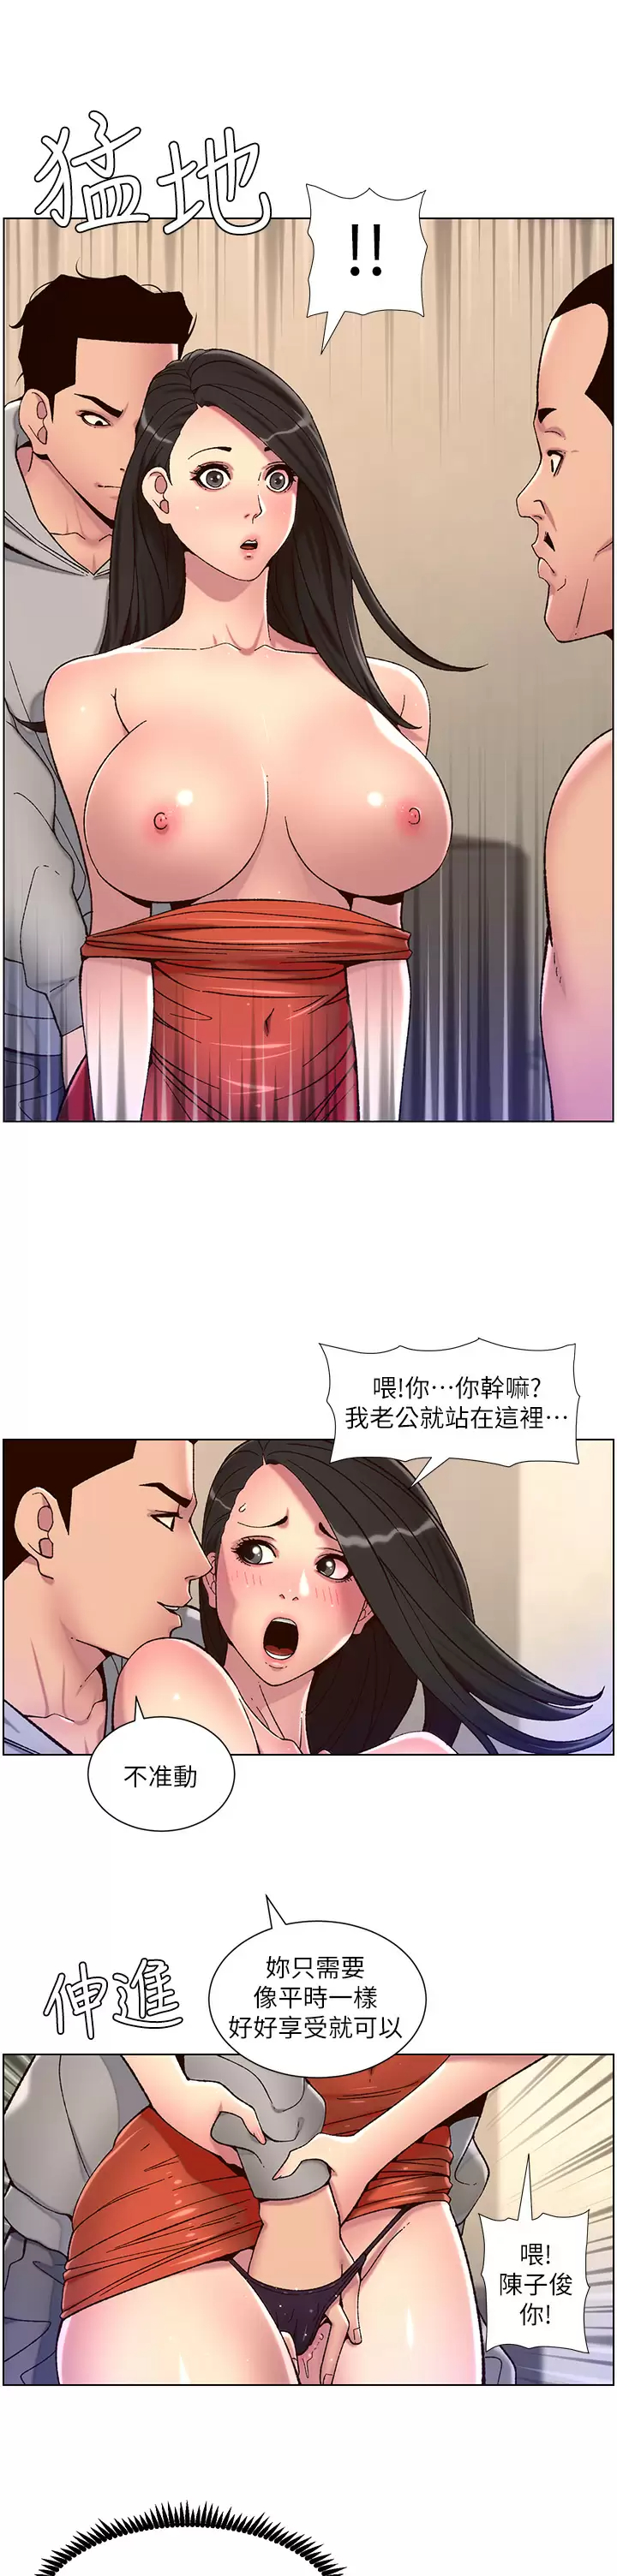 韩国污漫画 帝王App 第56话 在老公面前被硬上 22